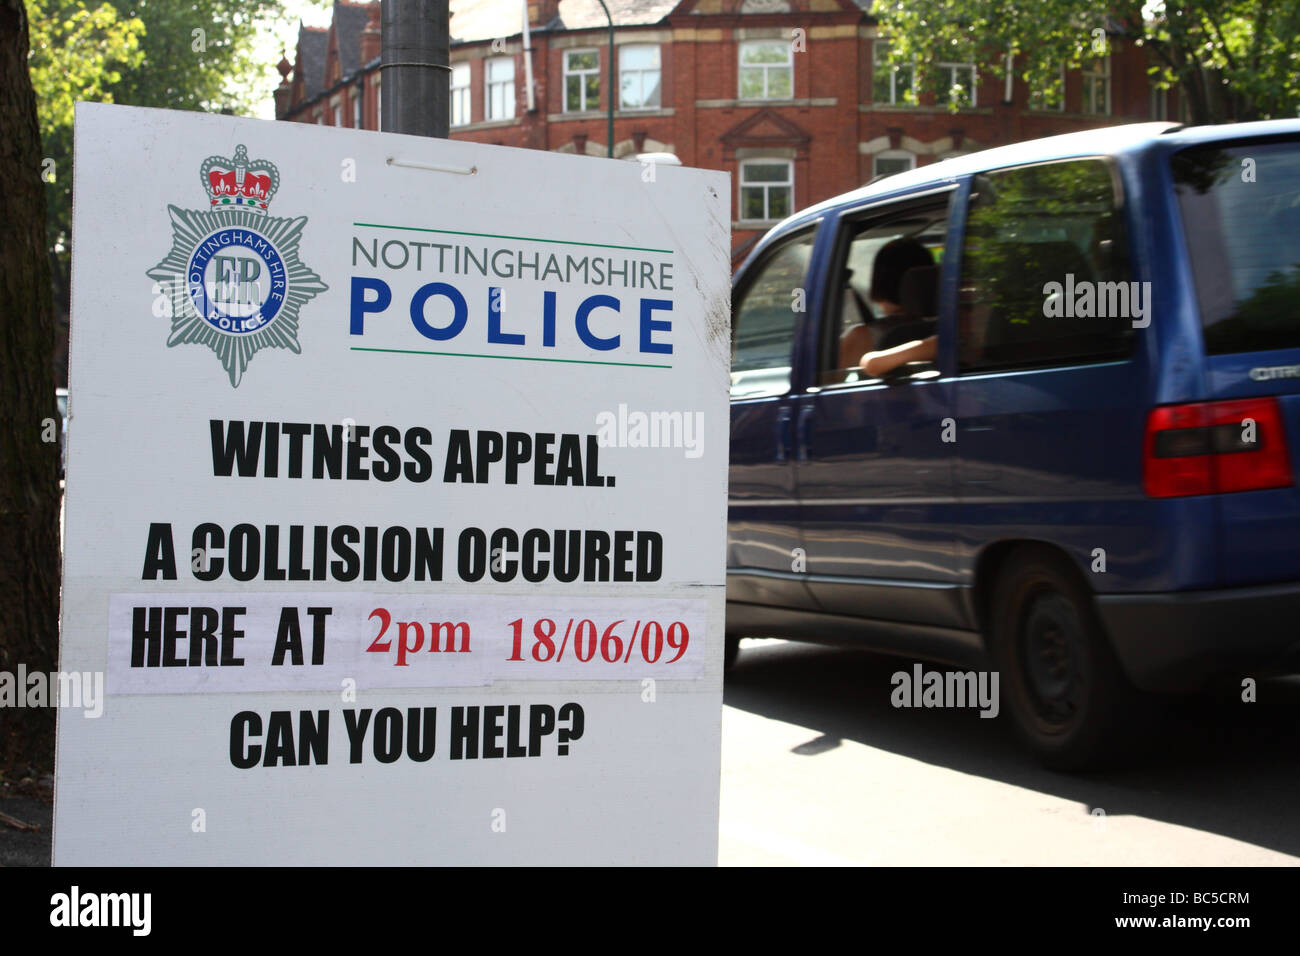 La police tchèque un témoin en bordure de signe d'appel sur les lieux d'un accident de la circulation dans le centre-ville de Nottingham. Banque D'Images